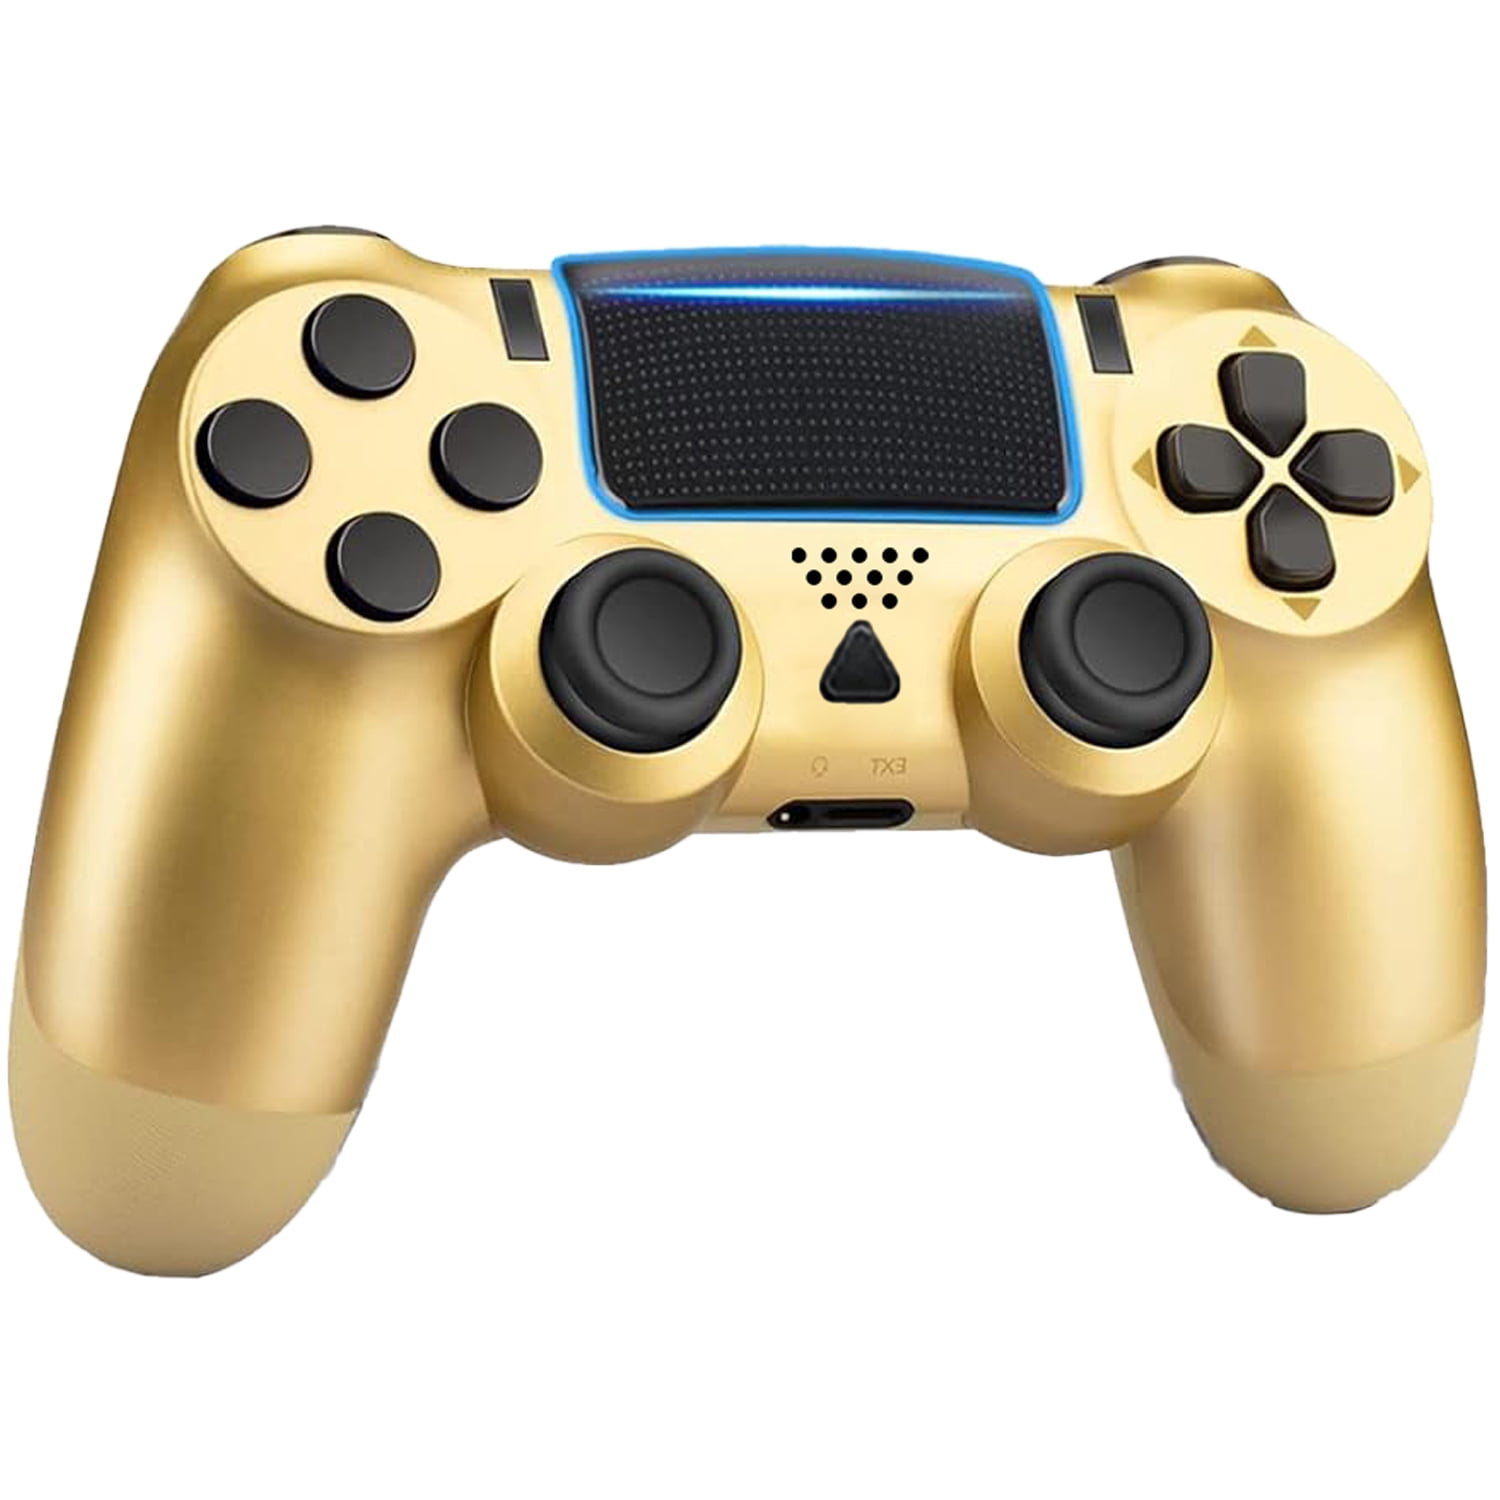 Controle Play Game Dualshock para PS4 Wireless - Dourado no Paraguai -  Visão Vip Informática - Compras no Paraguai - Loja de Informática